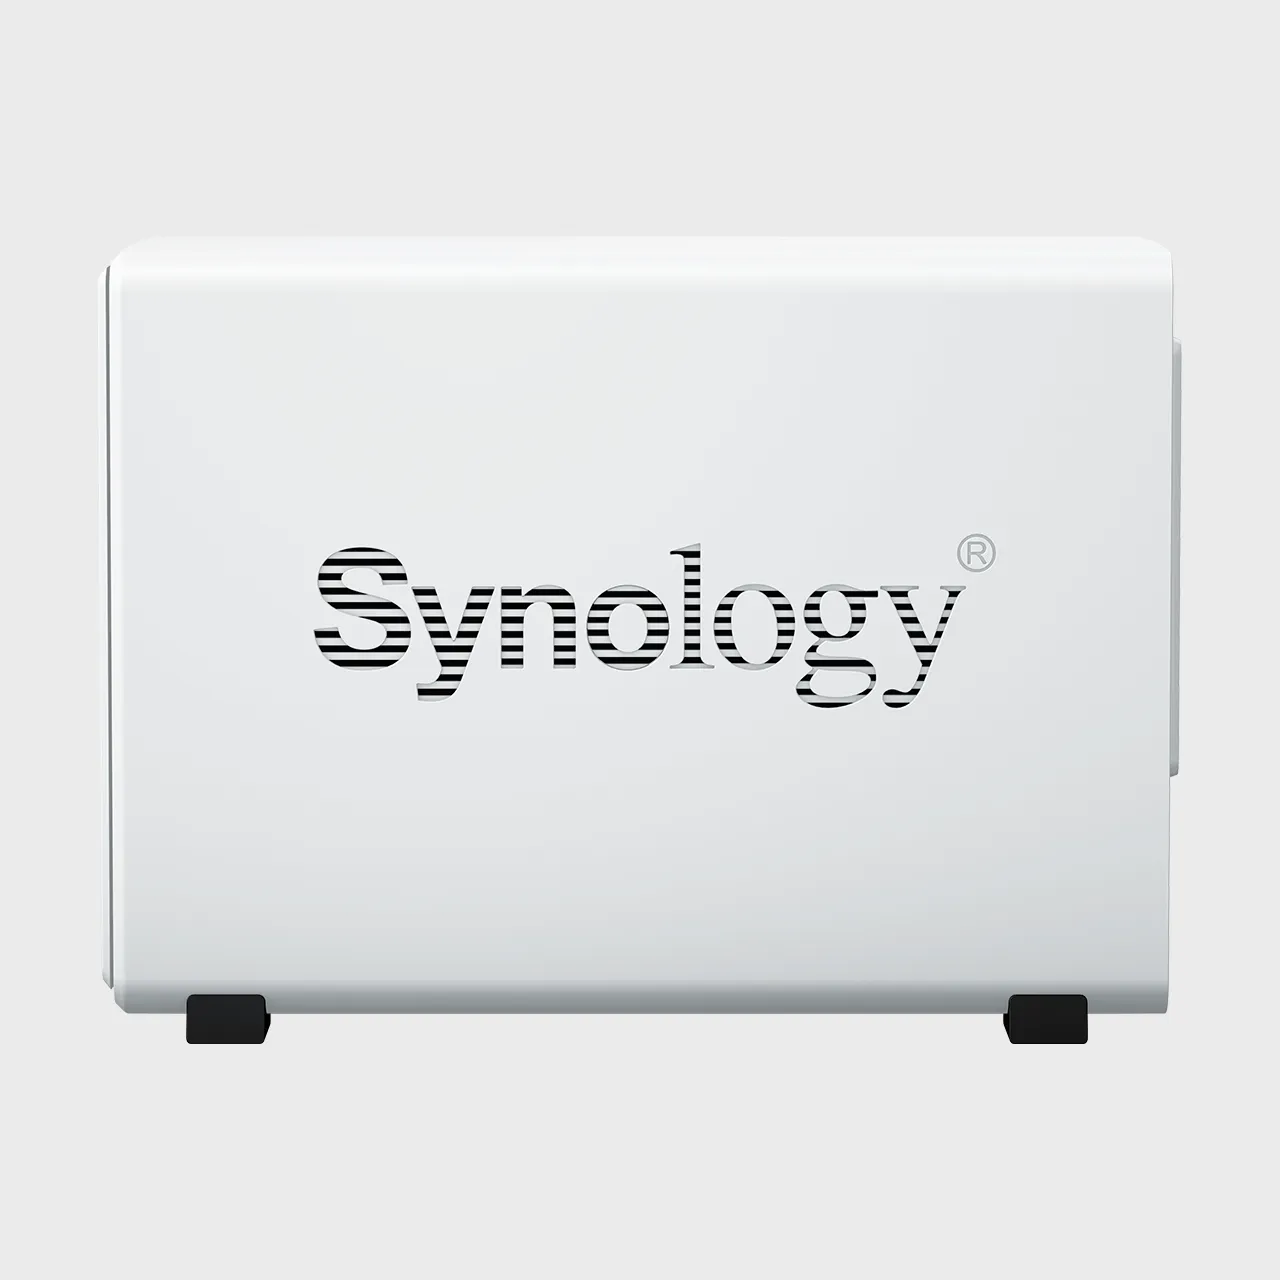 Synology ra mắt DiskStation DS223j, giải pháp NAS 2 khay đơn giản và hiệu quả